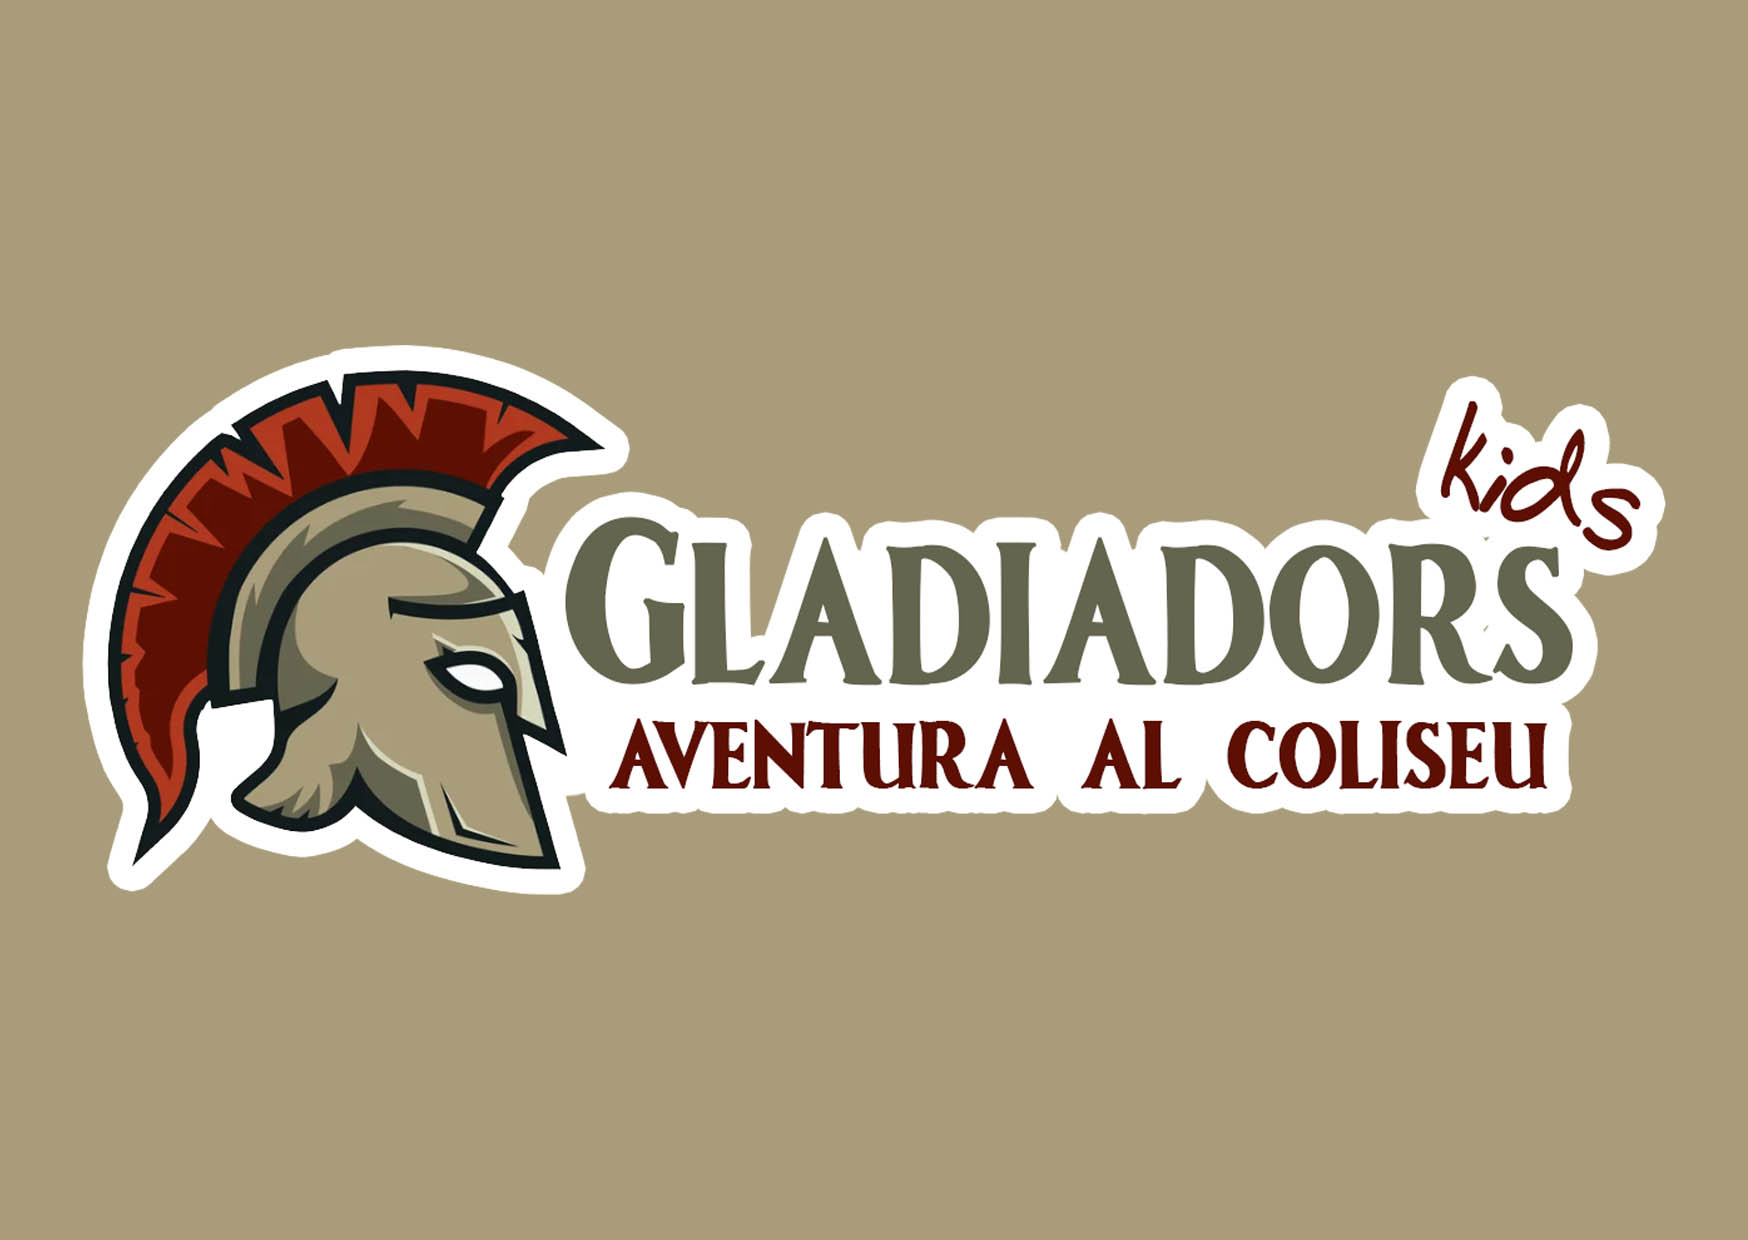 Gladiadors kids: aventura al Coliseu